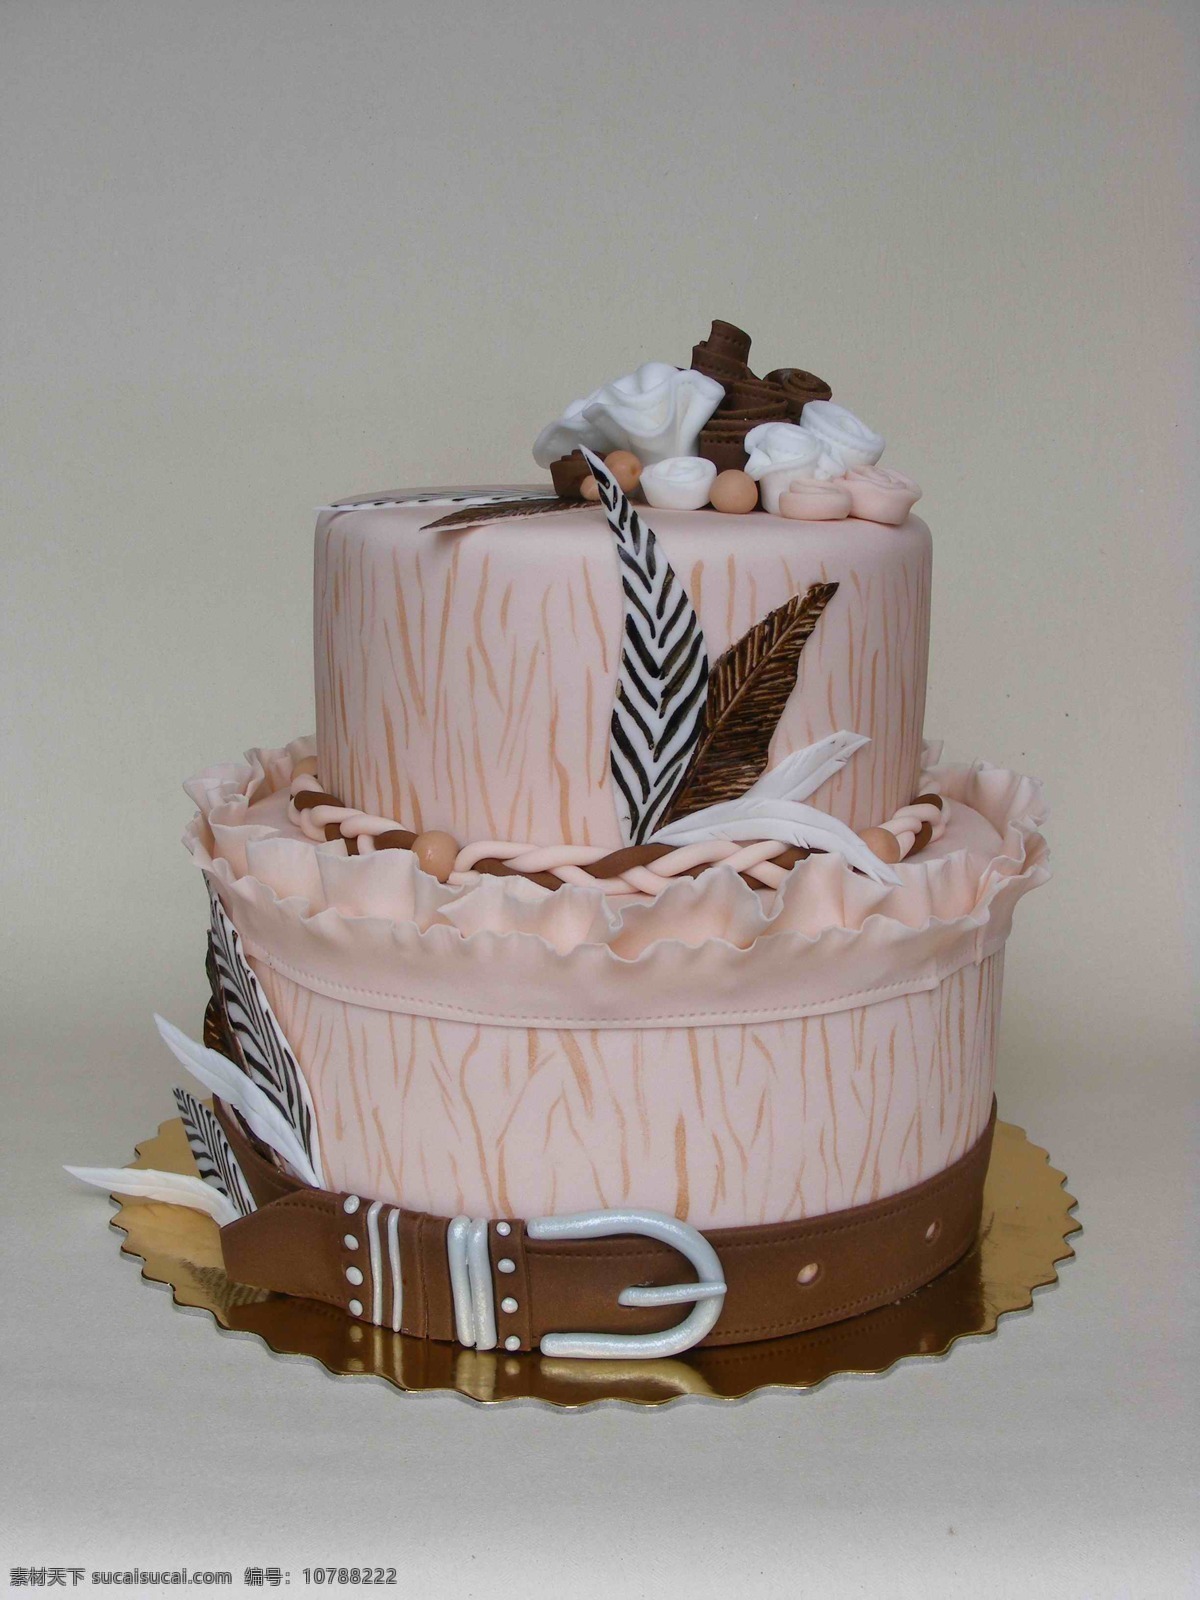 巧克力 奶油 蛋糕 点心 创意蛋糕 造型蛋糕 梦幻蛋糕 礼品蛋糕 双层蛋糕 婚礼蛋糕 美食 精致 经典 巧克力蛋糕 西餐美食 餐饮美食